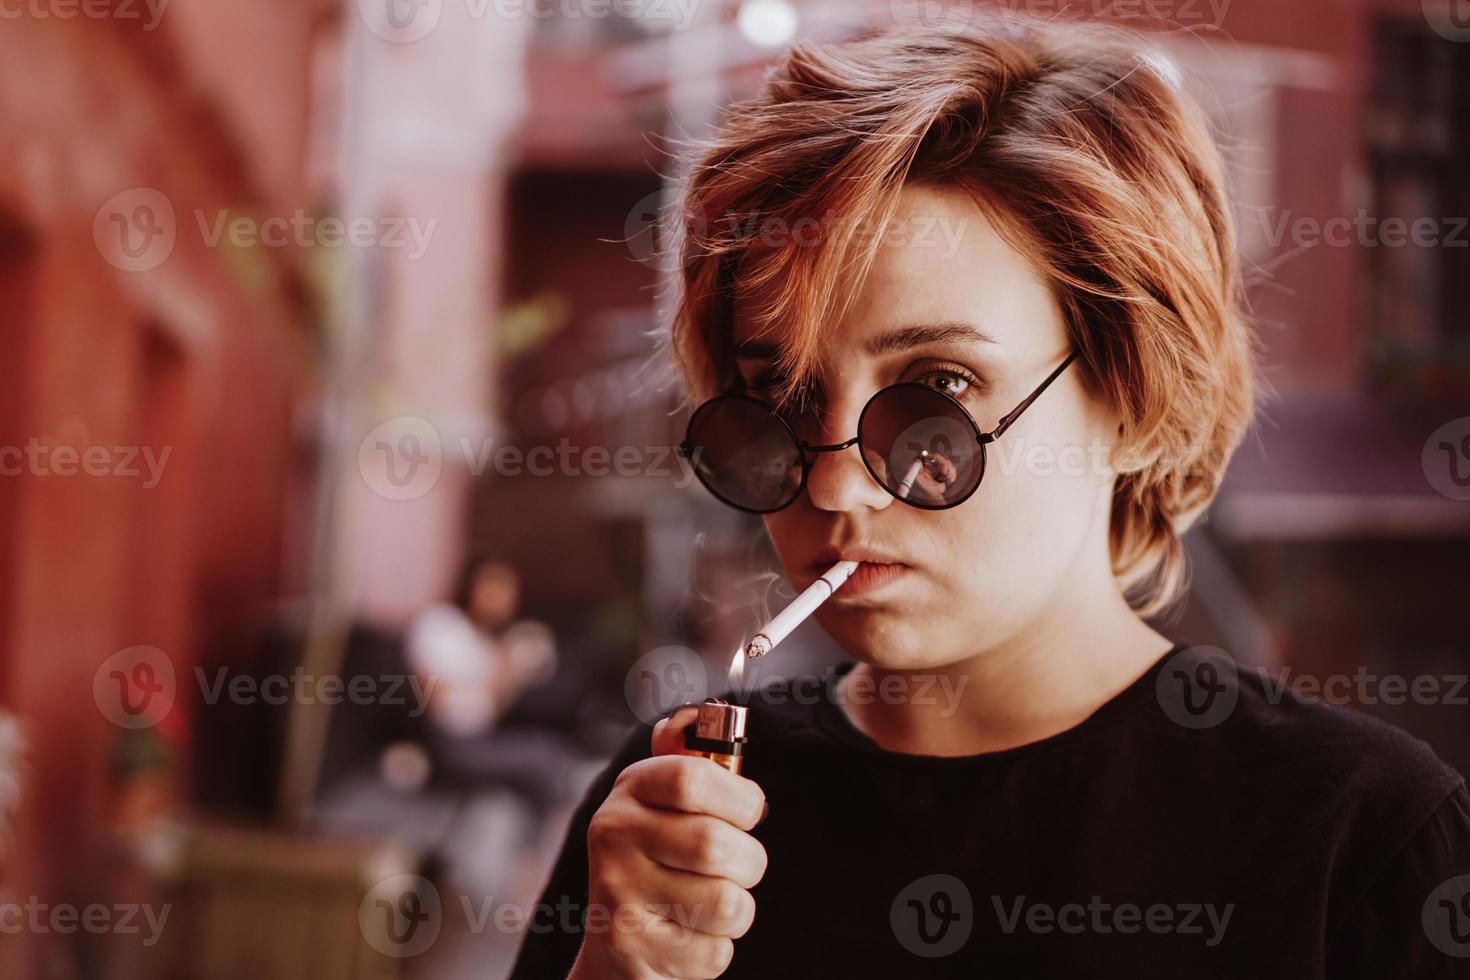 menina com cabelo ruivo curto e óculos de sol no espelho fumando cigarro foto